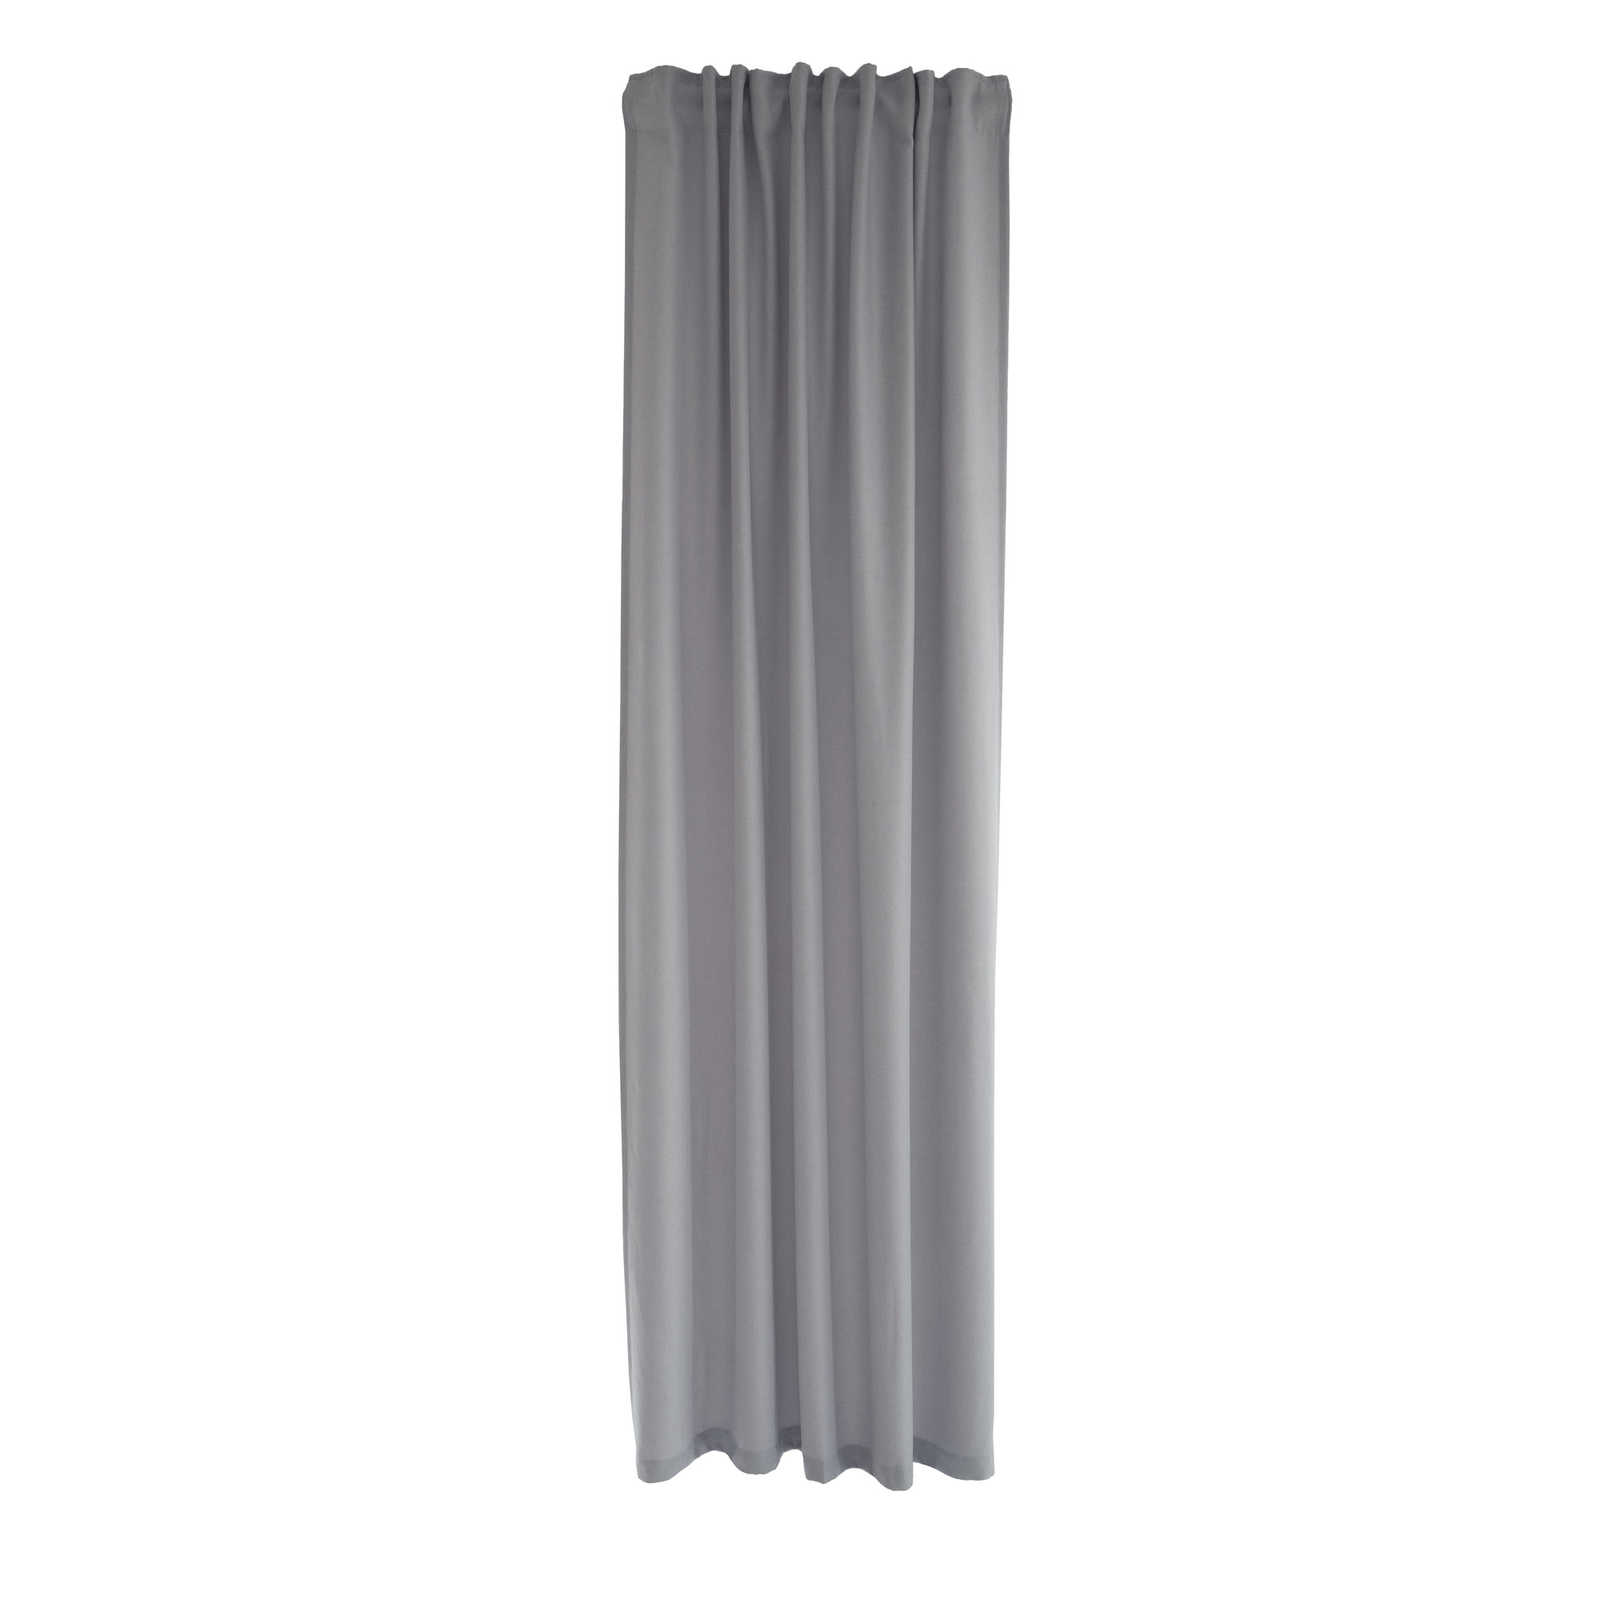         Echarpe décorative à passants 140 cm x 245 cm fibre synthétique gris clair
    